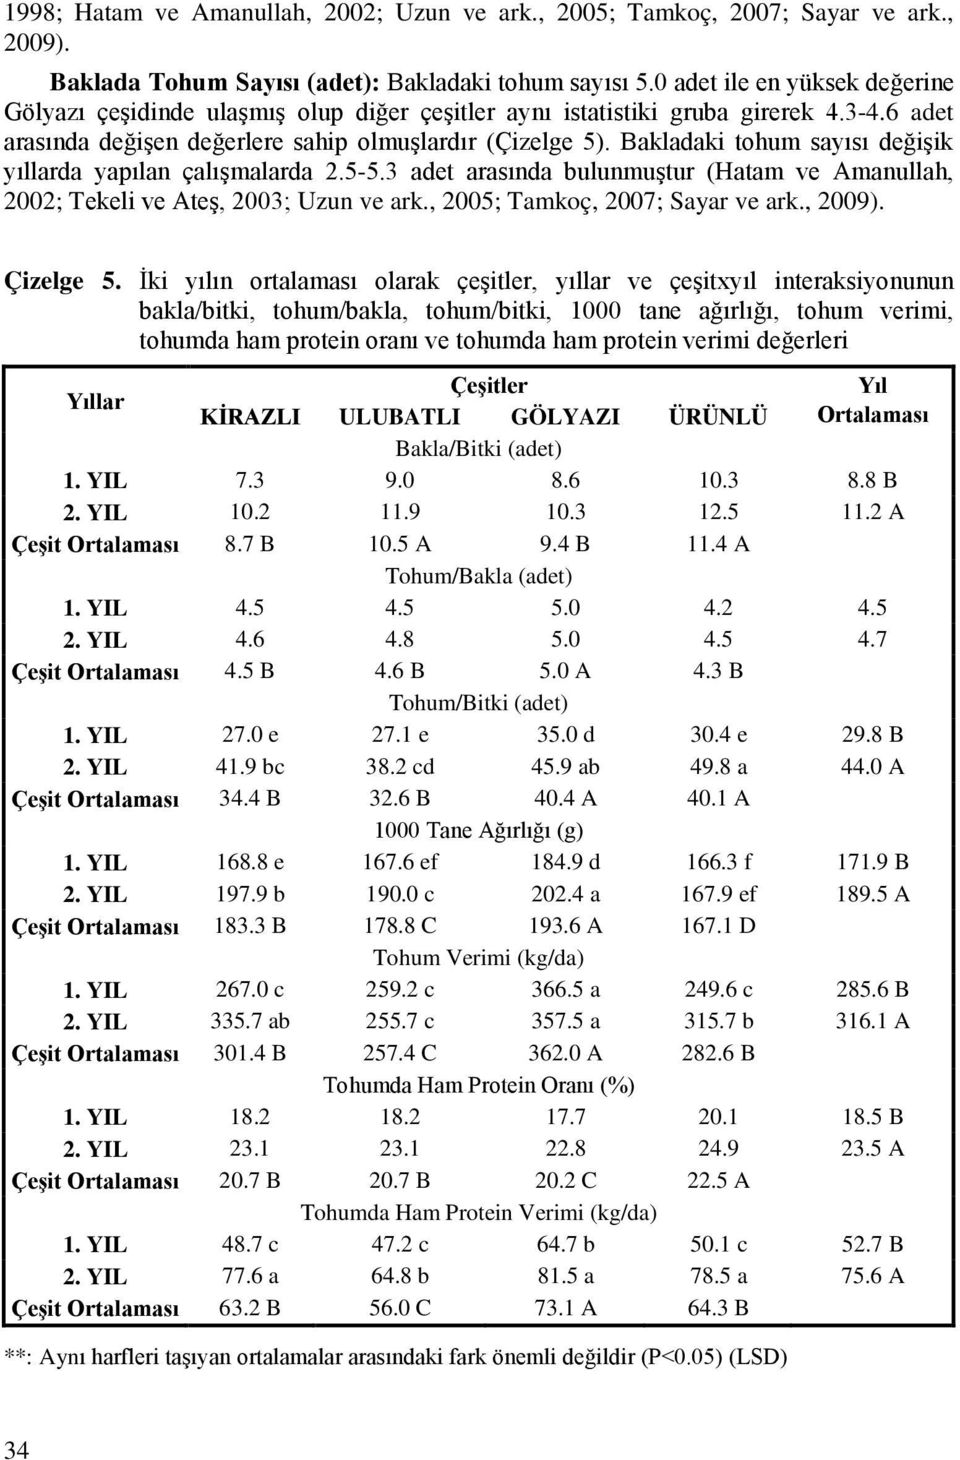 Bakladaki tohum sayısı değişik yıllarda yapılan çalışmalarda 2.5-5.3 adet arasında bulunmuştur (Hatam ve Amanullah, 2002; Tekeli ve Ateş, 2003; Uzun ve ark., 2005; Tamkoç, 2007; Sayar ve ark., 2009).